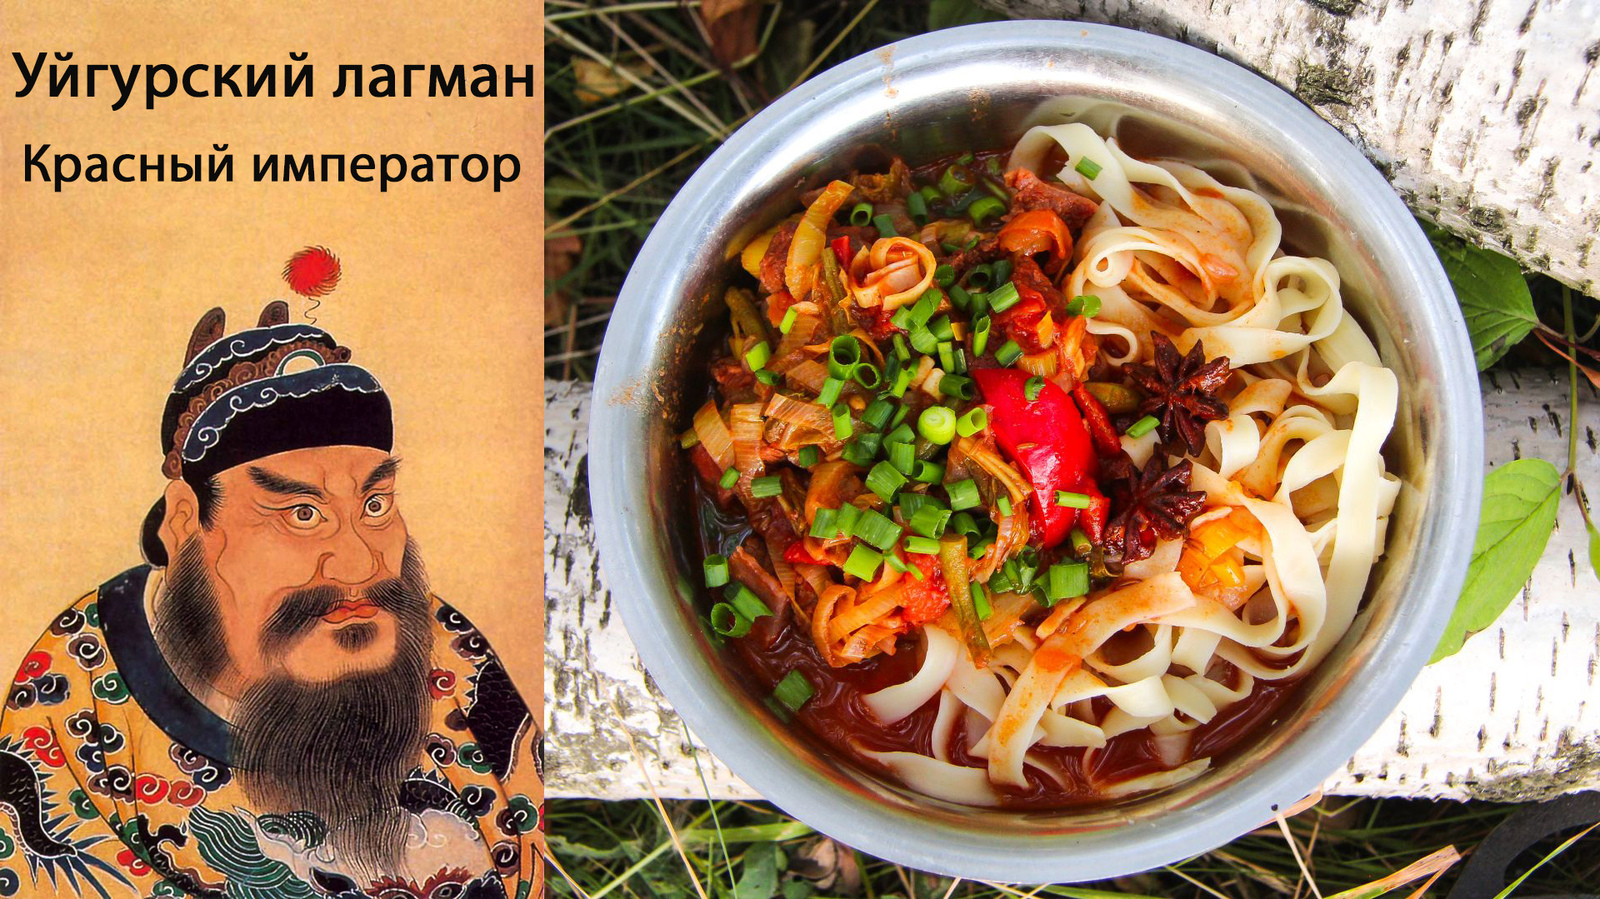 Лагман: уйгурский рецепт